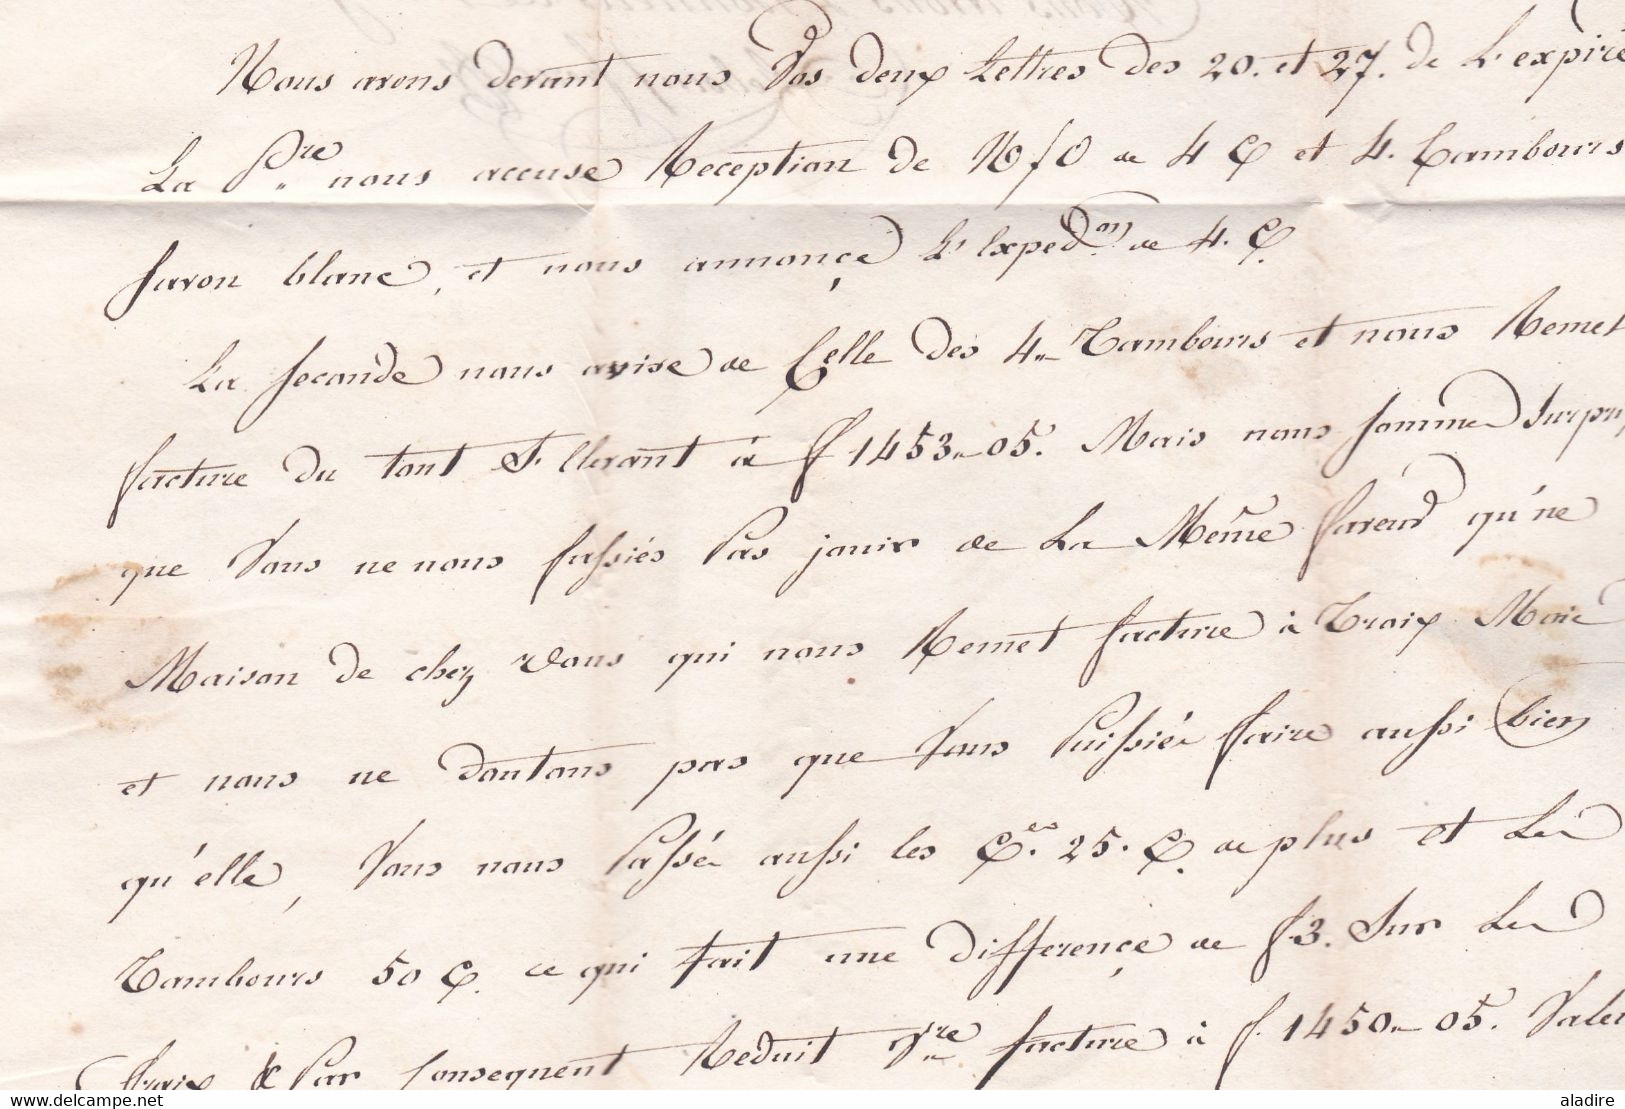 1816 - Marque postale 68 LYON sur lettre pliée de 2 pages vers DRAGUIGNAN, Var - taxe 6